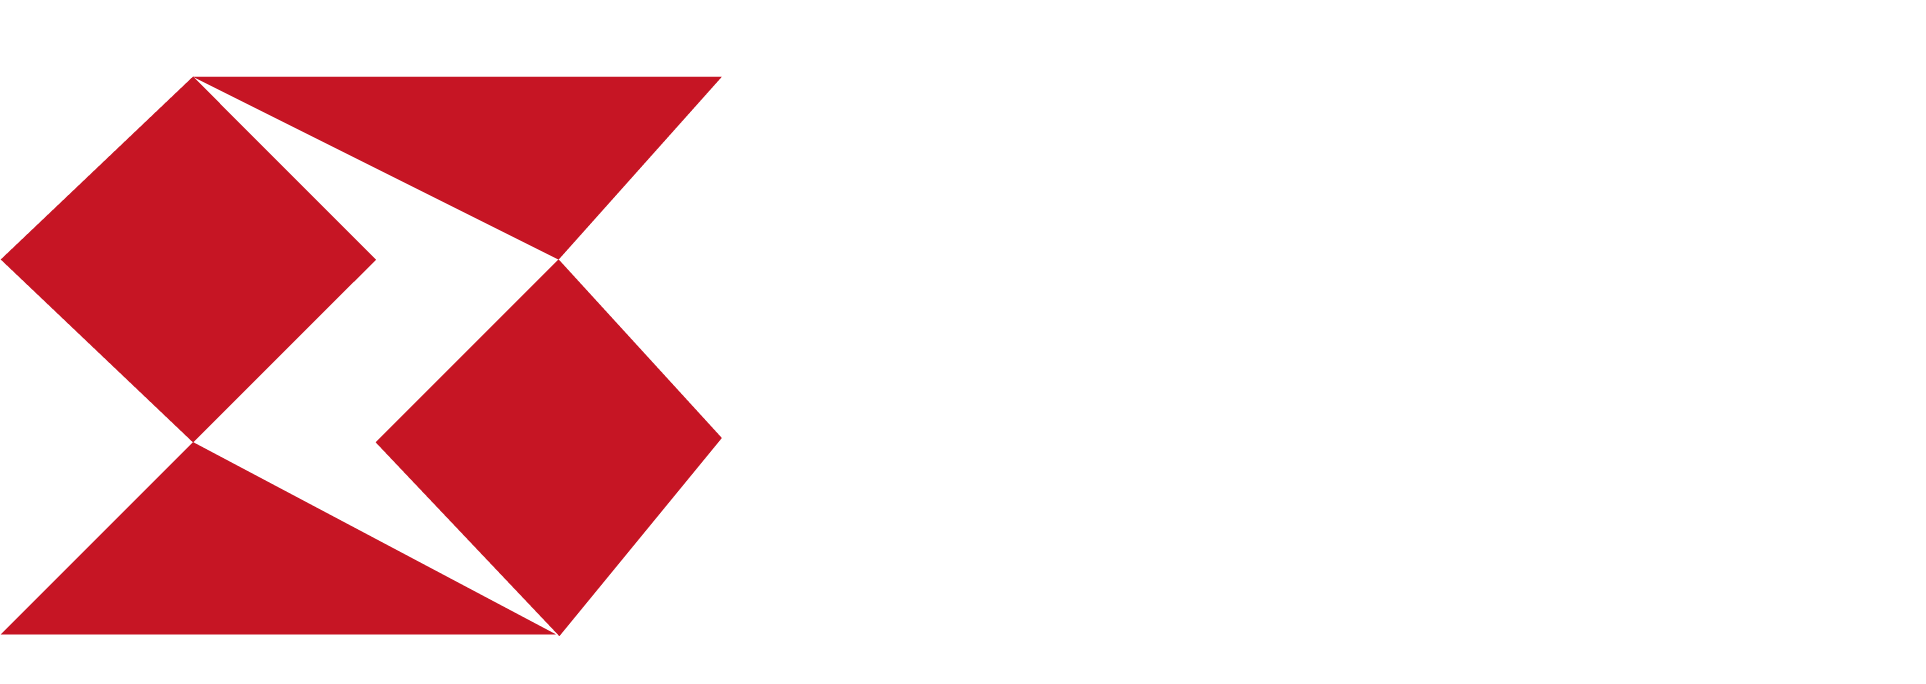 Studio Shine